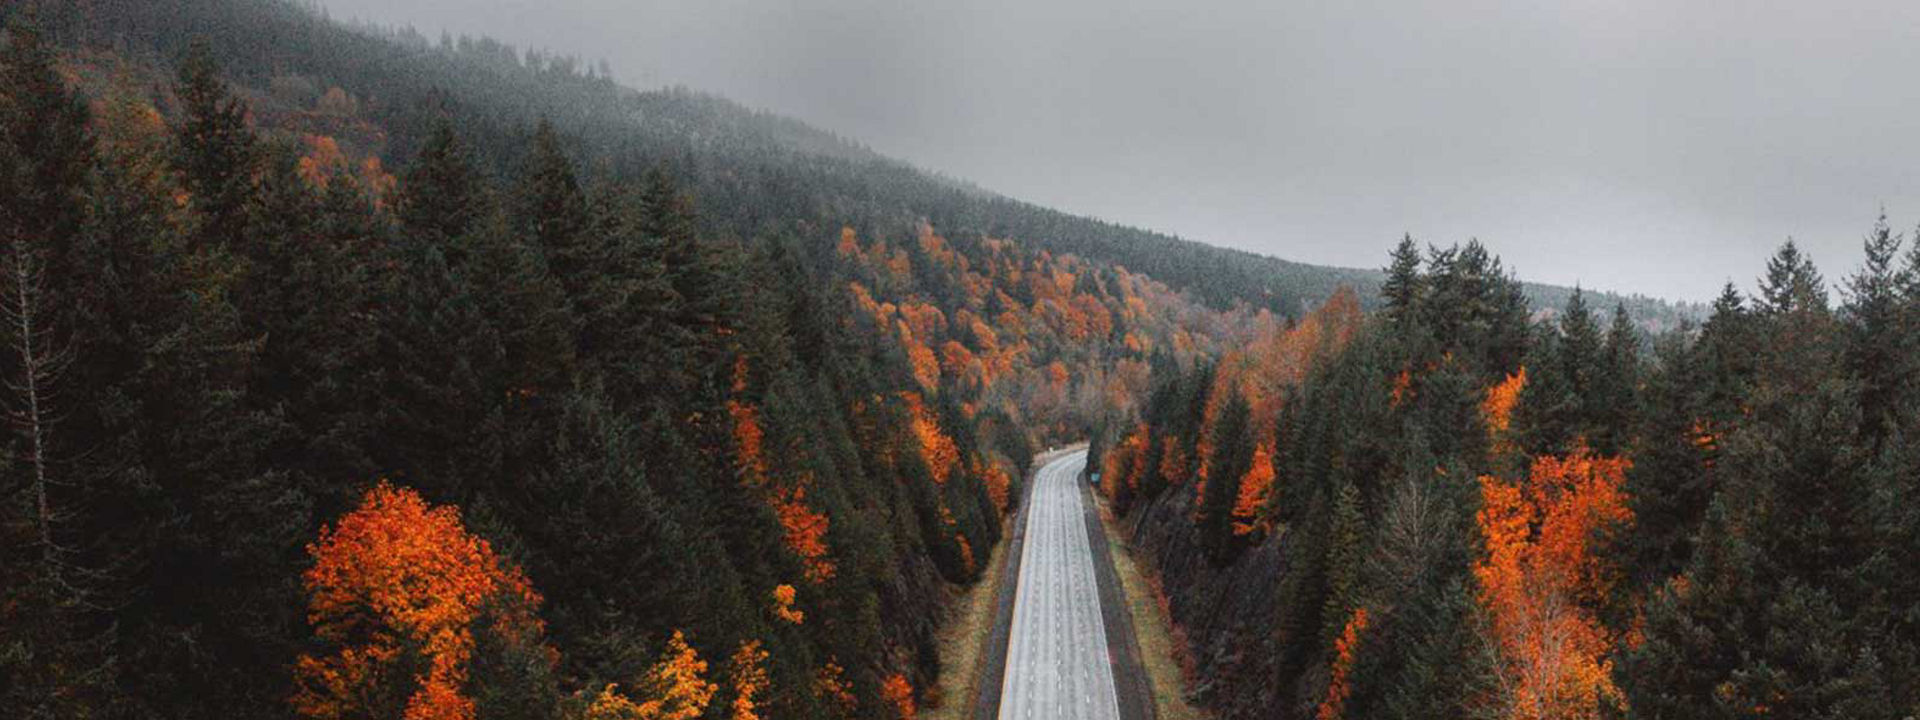 Az őszi képen egy erdőn áthaladó üres autópálya látható, ami arra utal, hogy a Weather Control négyévszakos abroncs